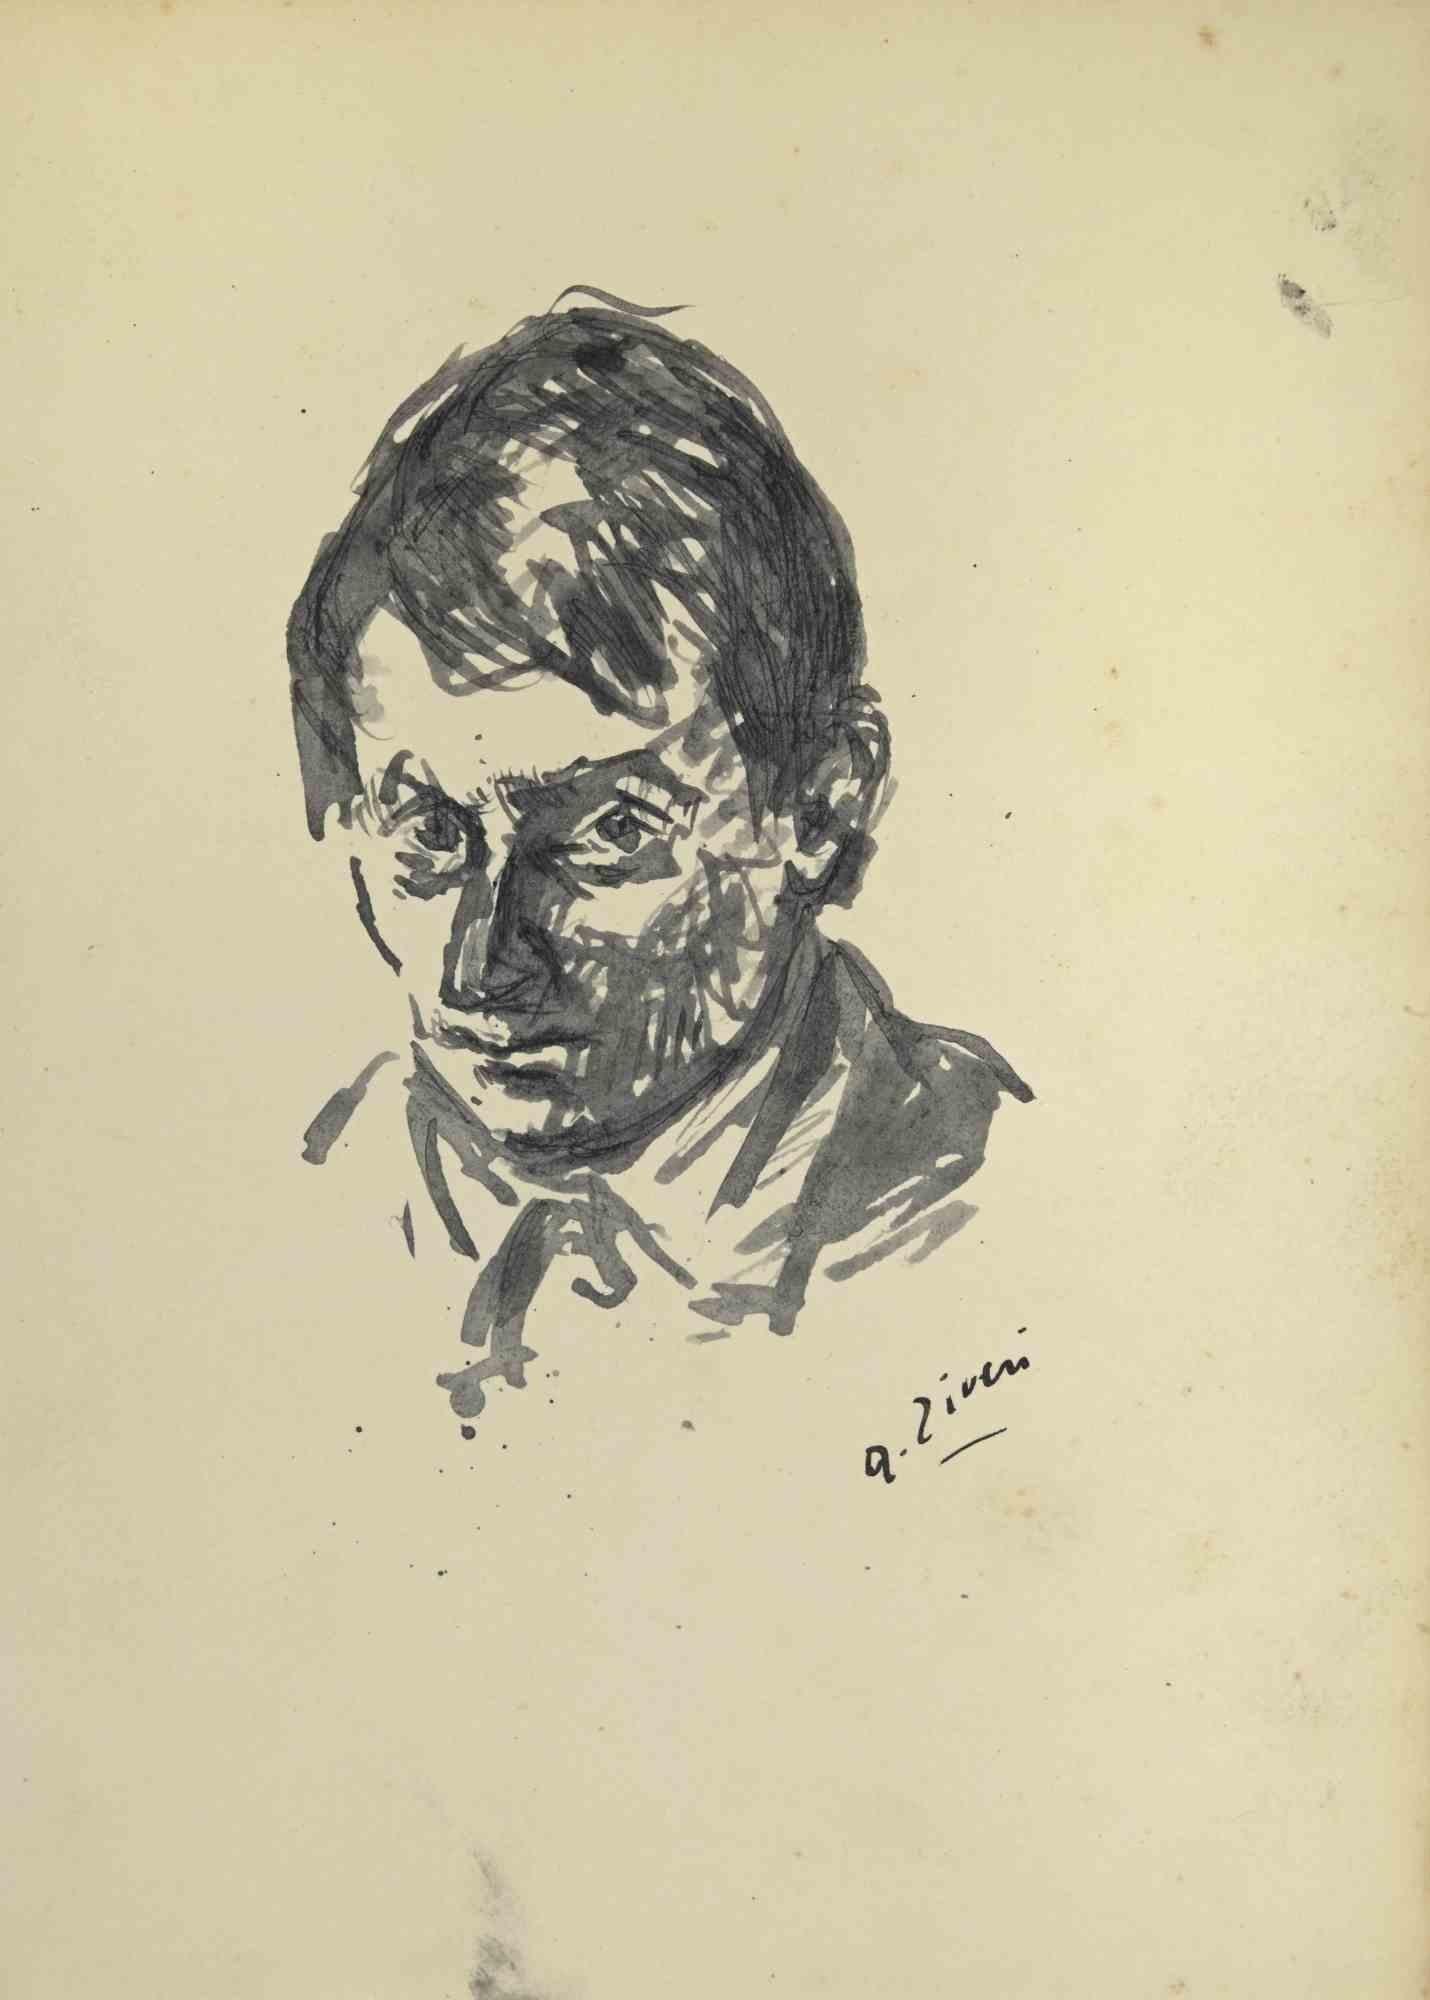 Das Porträt ist eine Zeichnung von Alberto Ziveri aus den 1930er Jahren.

Aquarell auf Papier.

Handsigniert.

In gutem Zustand mit Stockflecken.

Das Kunstwerk wird durch geschickte Striche meisterhaft dargestellt.

Alberto Ziveri (Rom, 1908 -